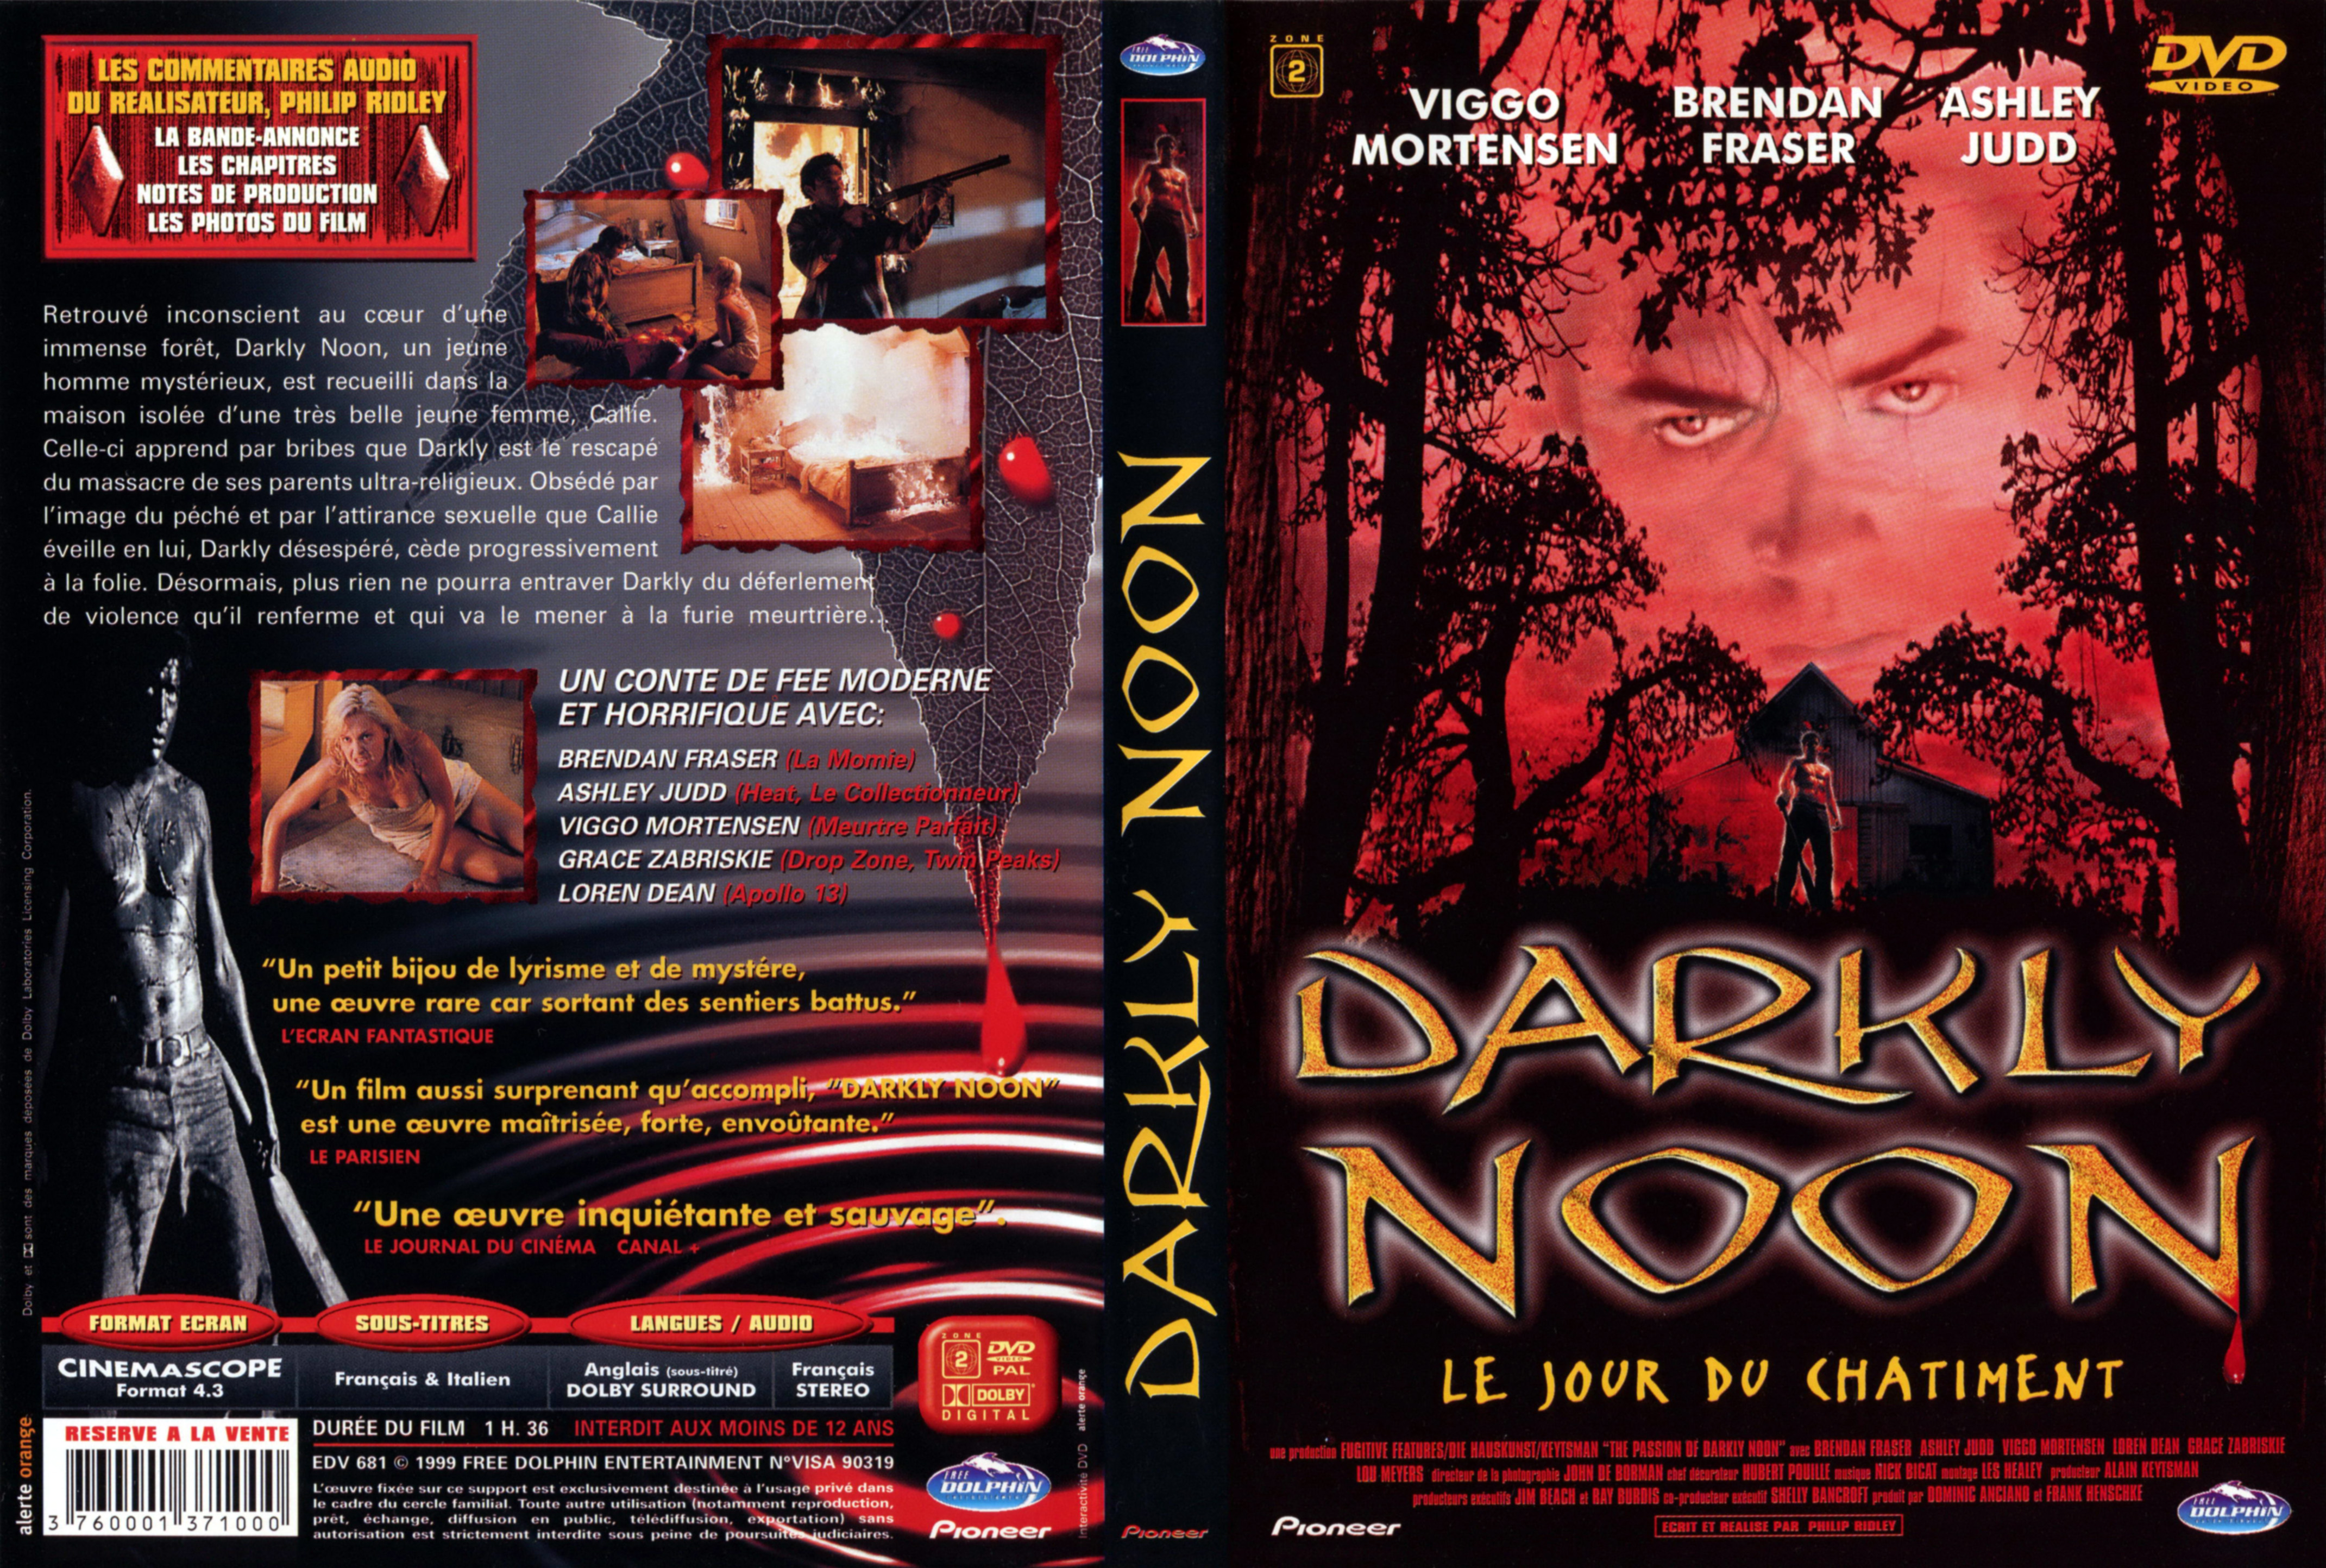 Jaquette DVD Darkly moon